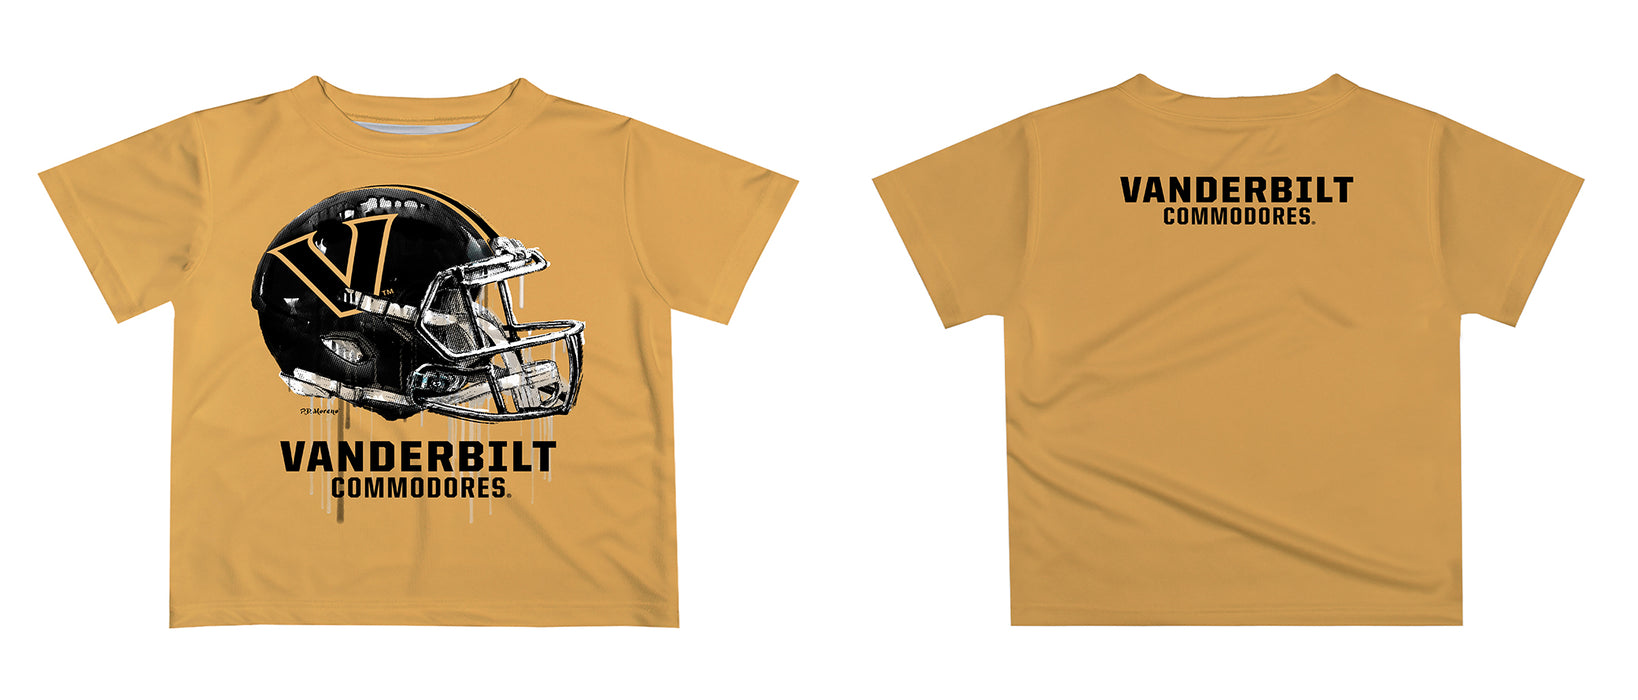 Vanderbilt University Commodores Original Dripping Football Helmet T-Shirt by Vive La Fete - Vive La Fête - Online Apparel Store